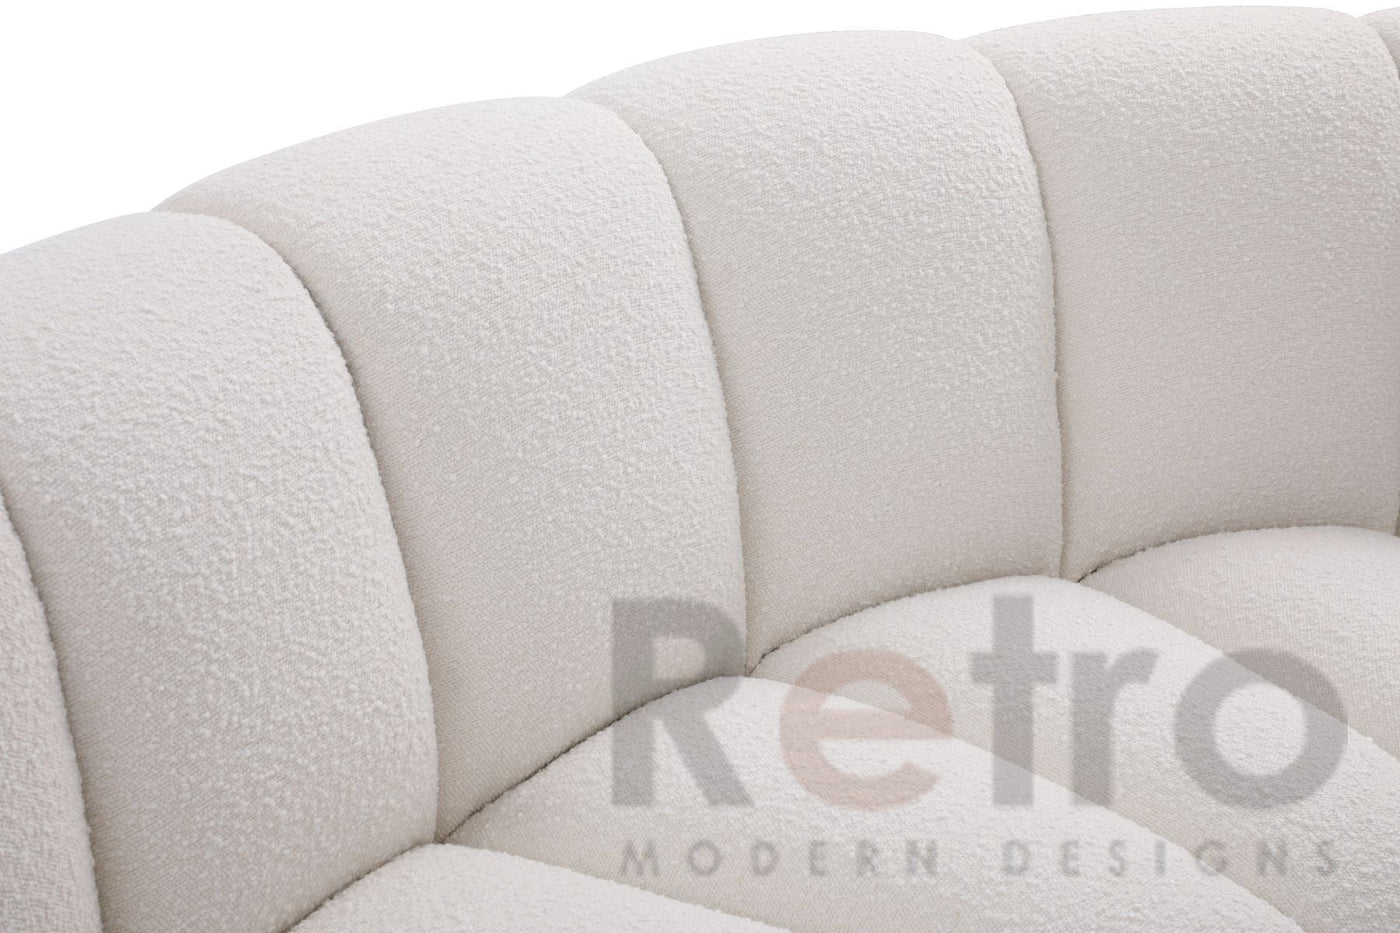 Channel sofa - Retro Modern Designs